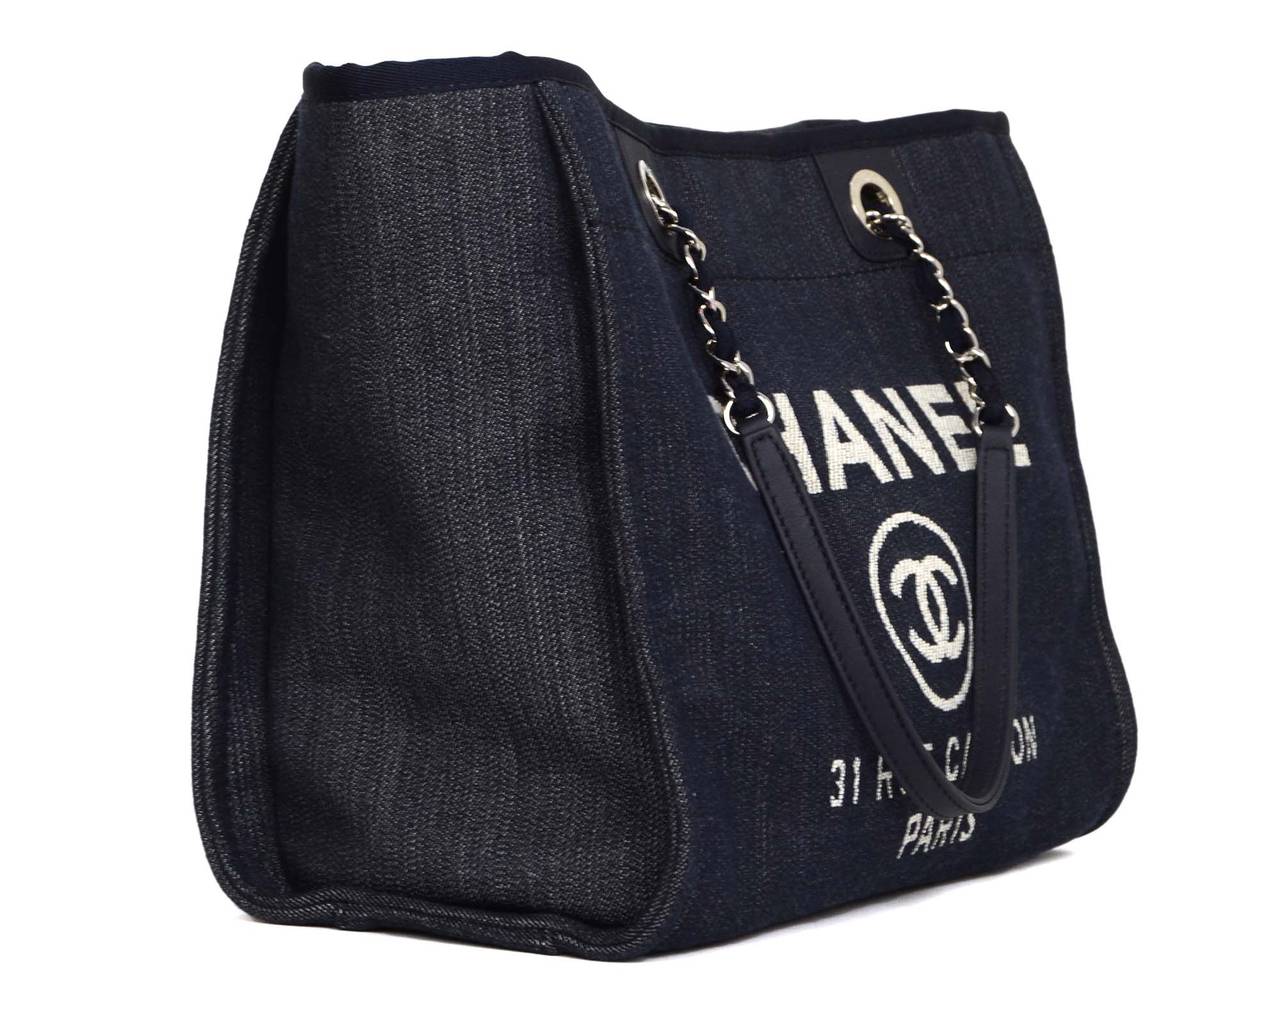 Chanel '15 Blue Denim Deauville Shopper Tote
Features 